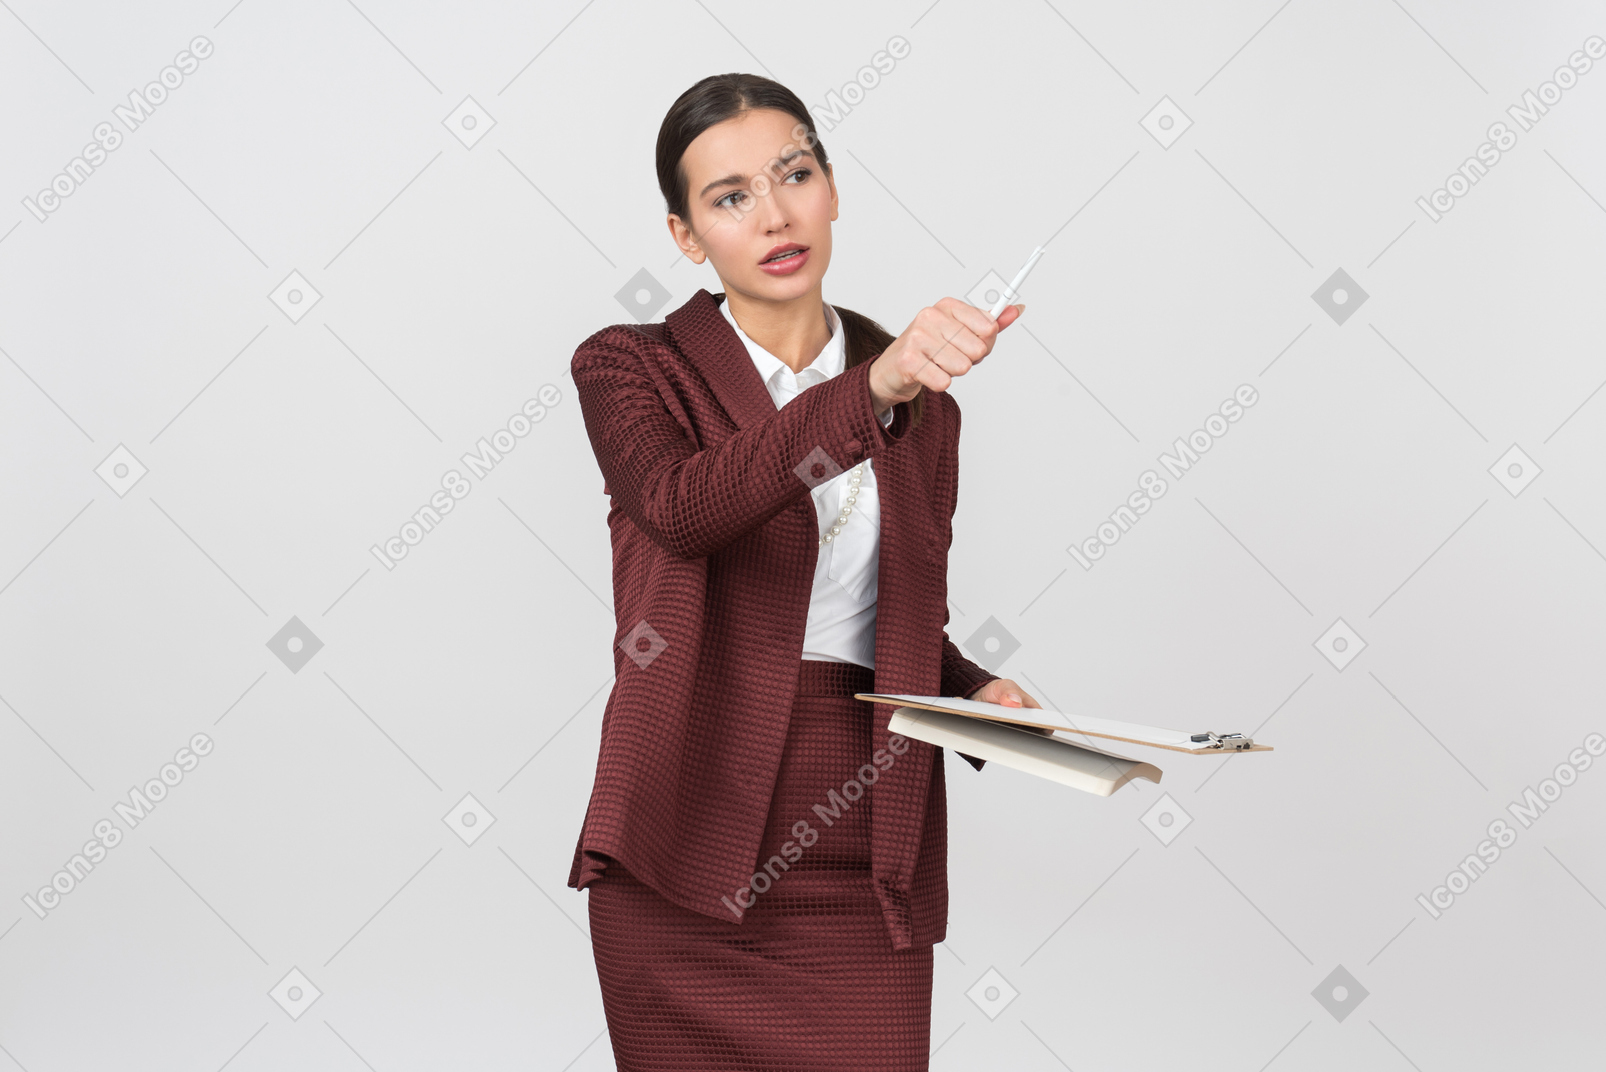 Привлекательная официально одетая женщина с буфером обмена, указывая на что-то